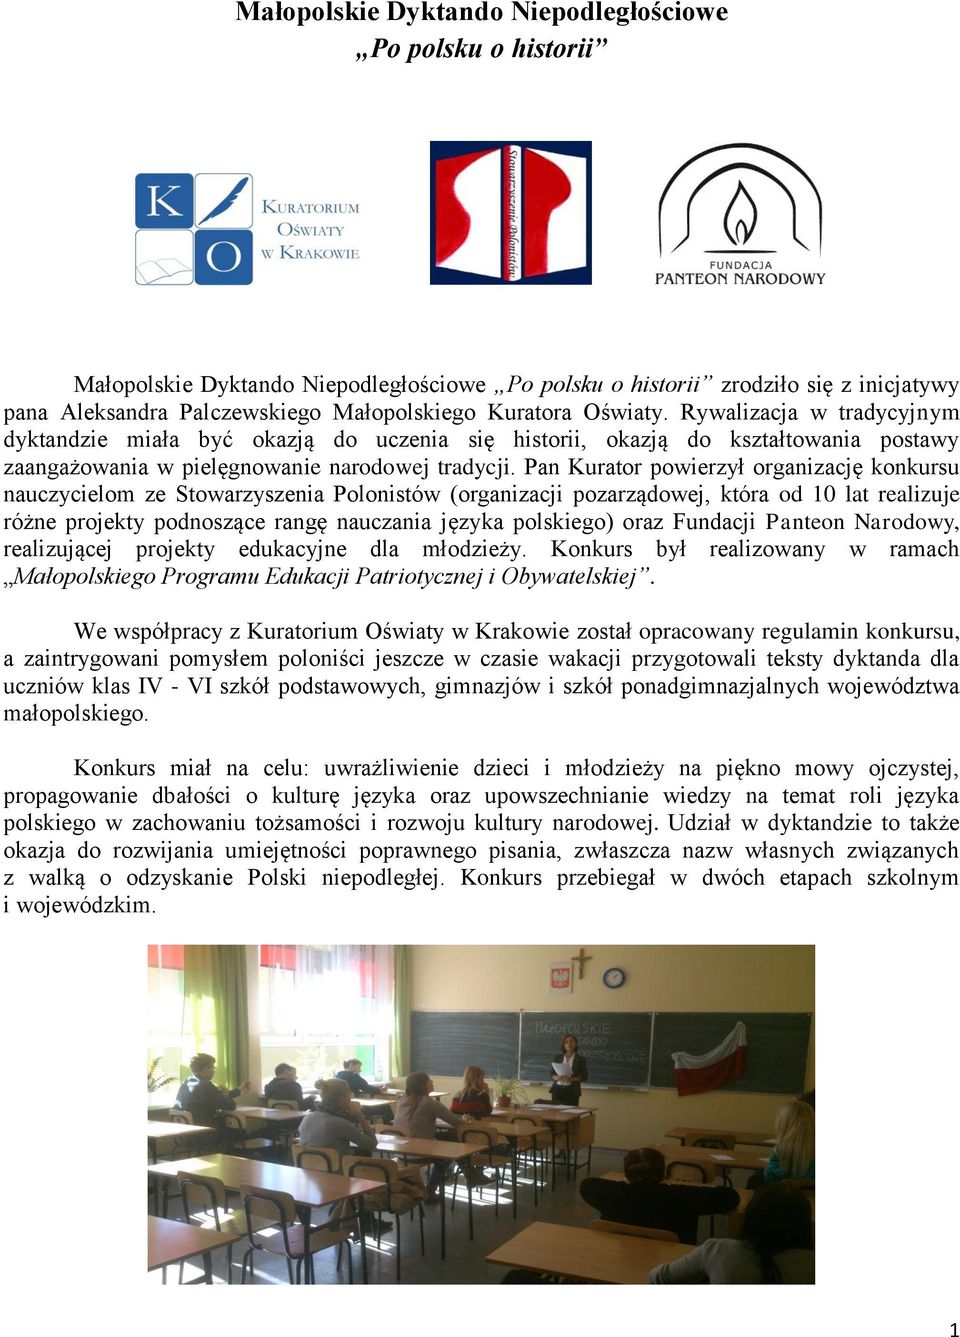 Pan Kurator powierzył organizację konkursu nauczycielom ze Stowarzyszenia Polonistów (organizacji pozarządowej, która od 10 lat realizuje różne projekty podnoszące rangę nauczania języka polskiego)